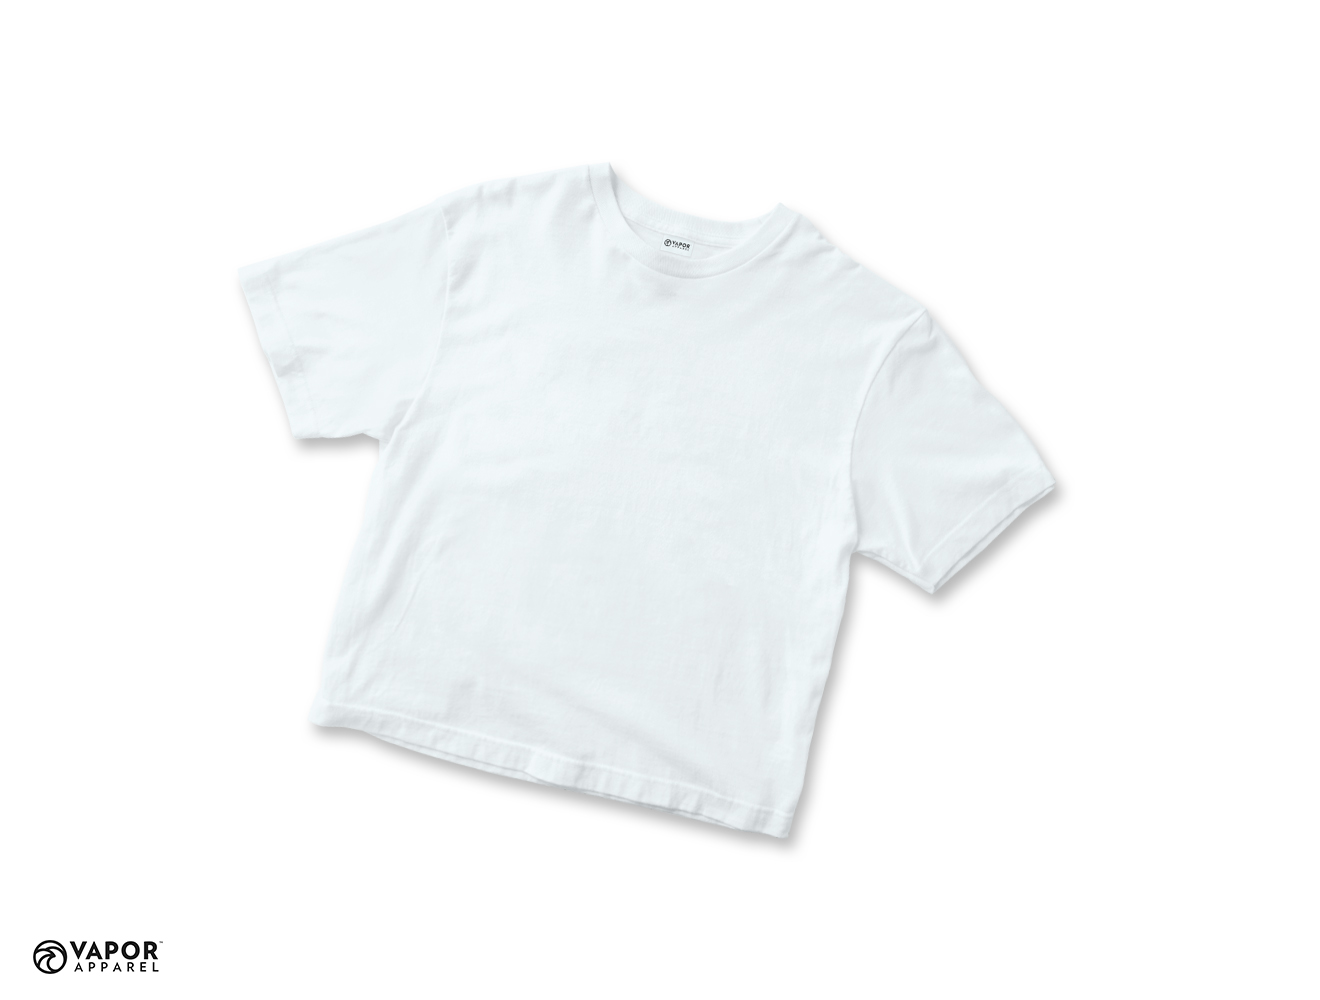 Vapor Basic Toddler T-Shirt White - 86